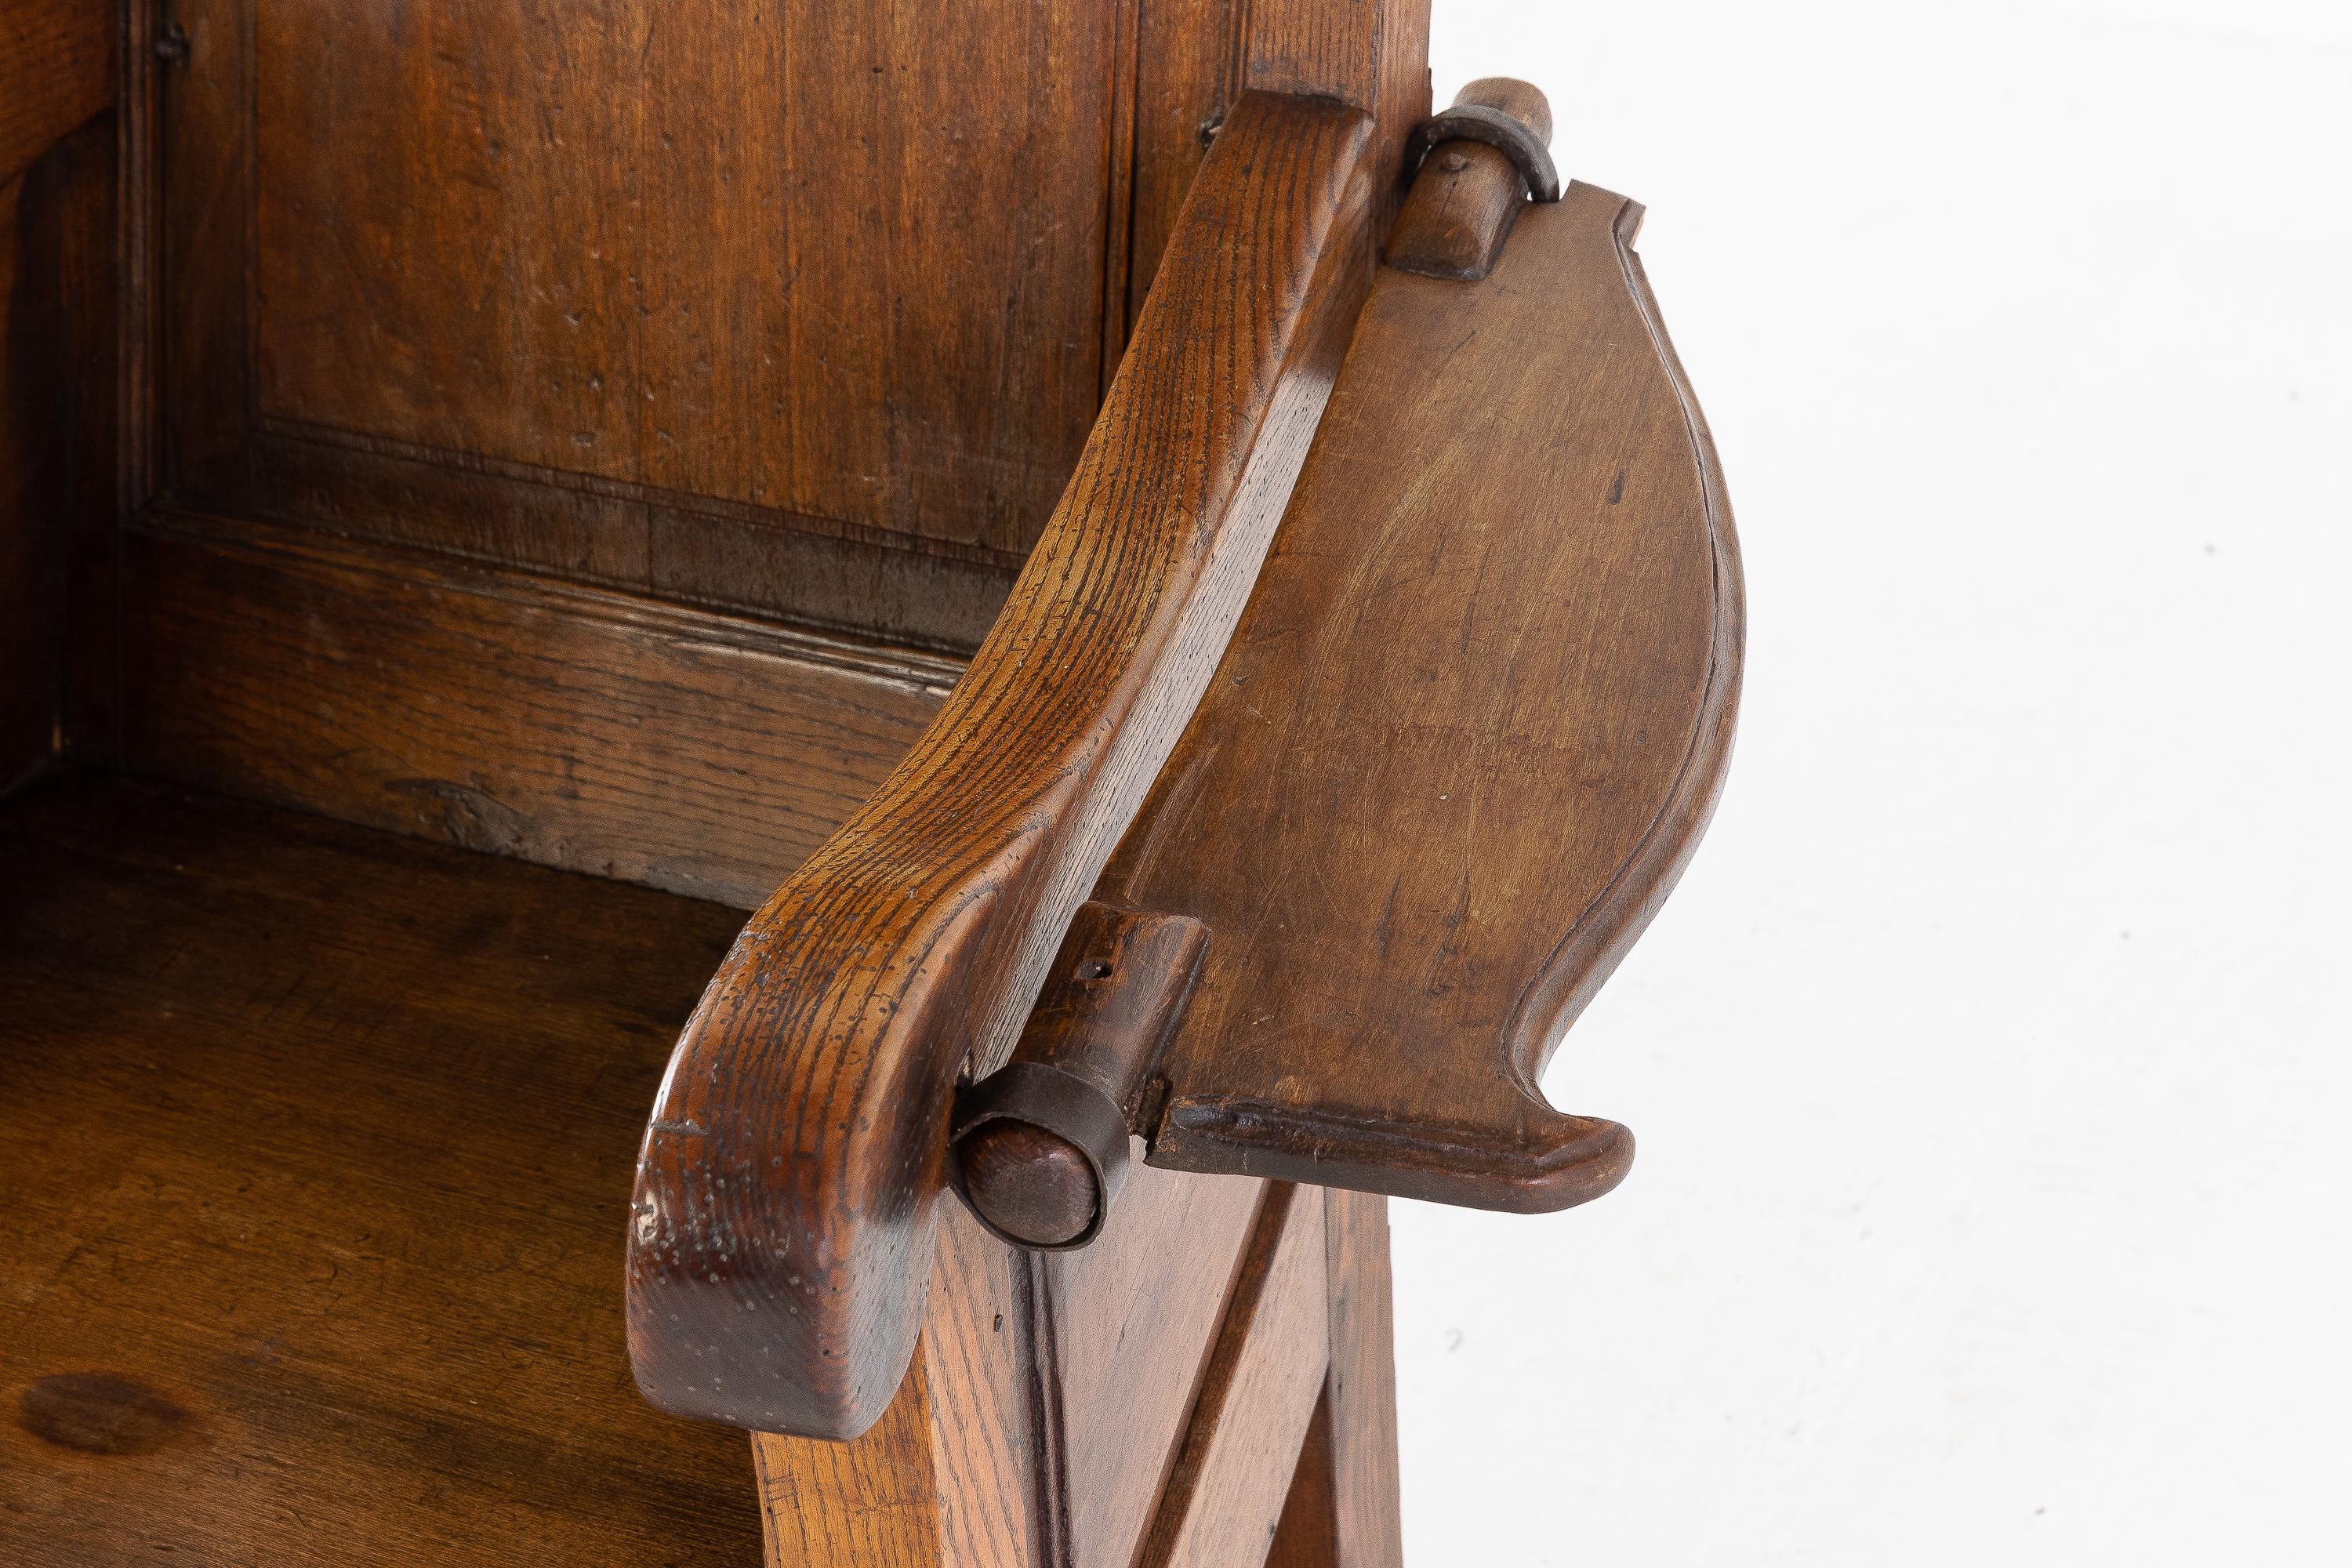 chaise d'agneau en frêne rustique hollandaise du 19ème siècle. En très bon état, solide, avec une belle couleur et patine.

Les chaises d'agneau sculptées à haut dossier sont généralement de conception individuelle et ont peut-être été fabriquées